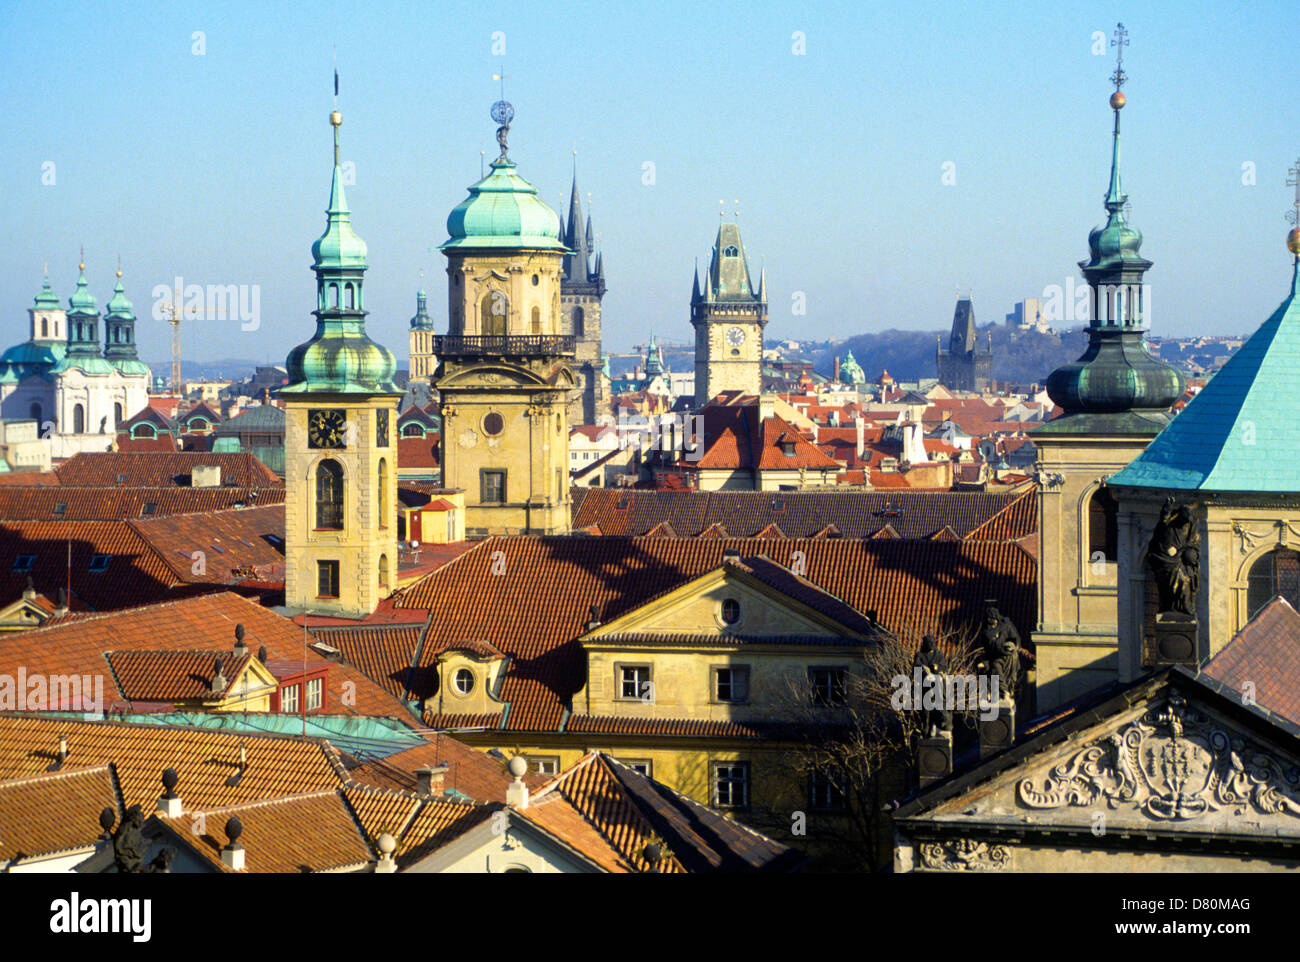 Blick über Dächer mit Kirchtürmen und Kuppeln, Prag, Tschechische Republik Stockfoto